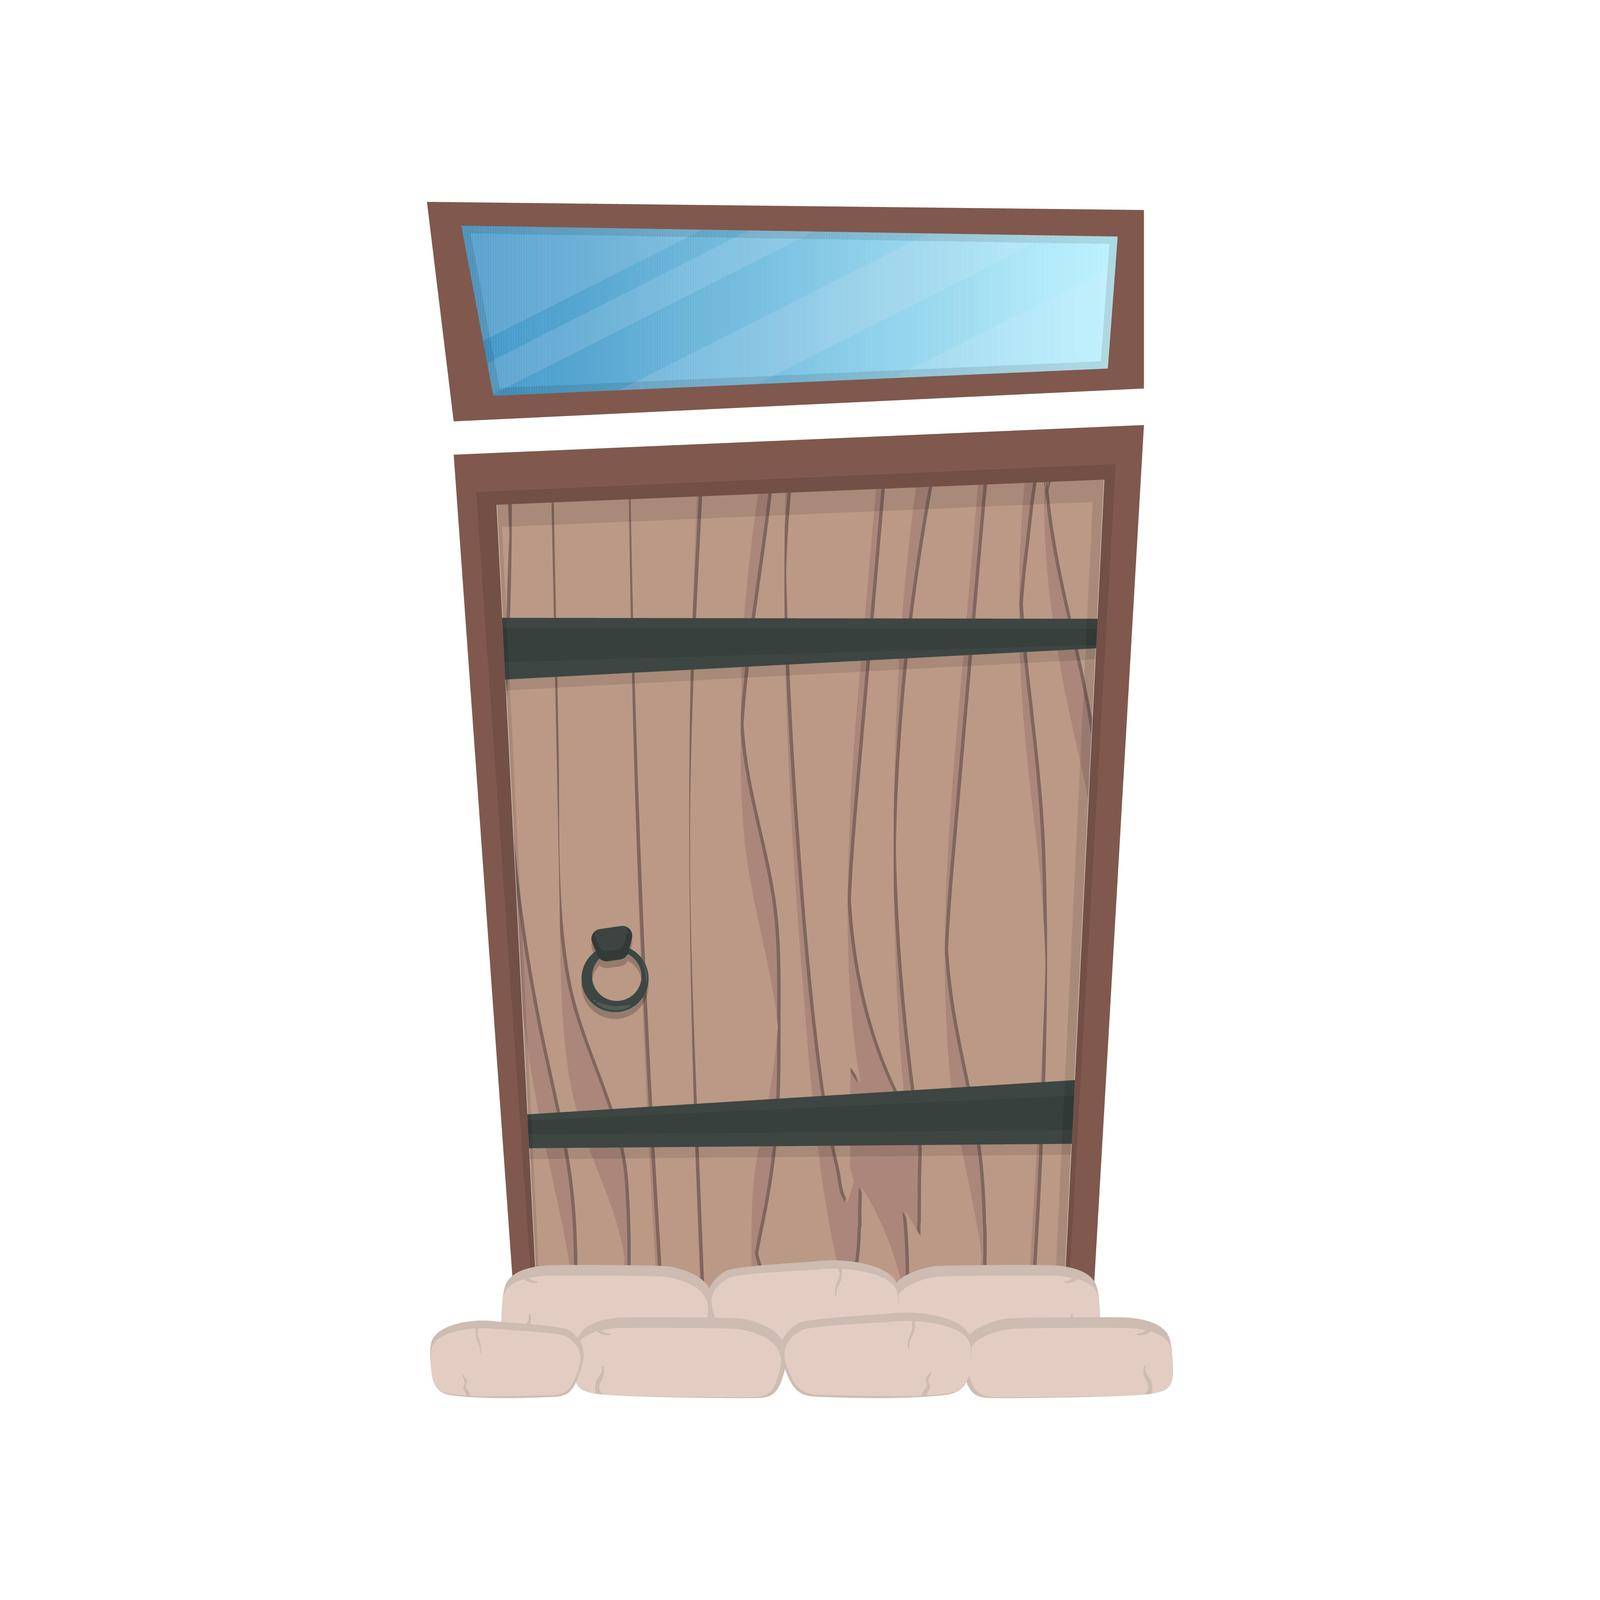 Antique rectangular wooden entrance door. Window above the door. Cartoon style. Isolated. Vector.